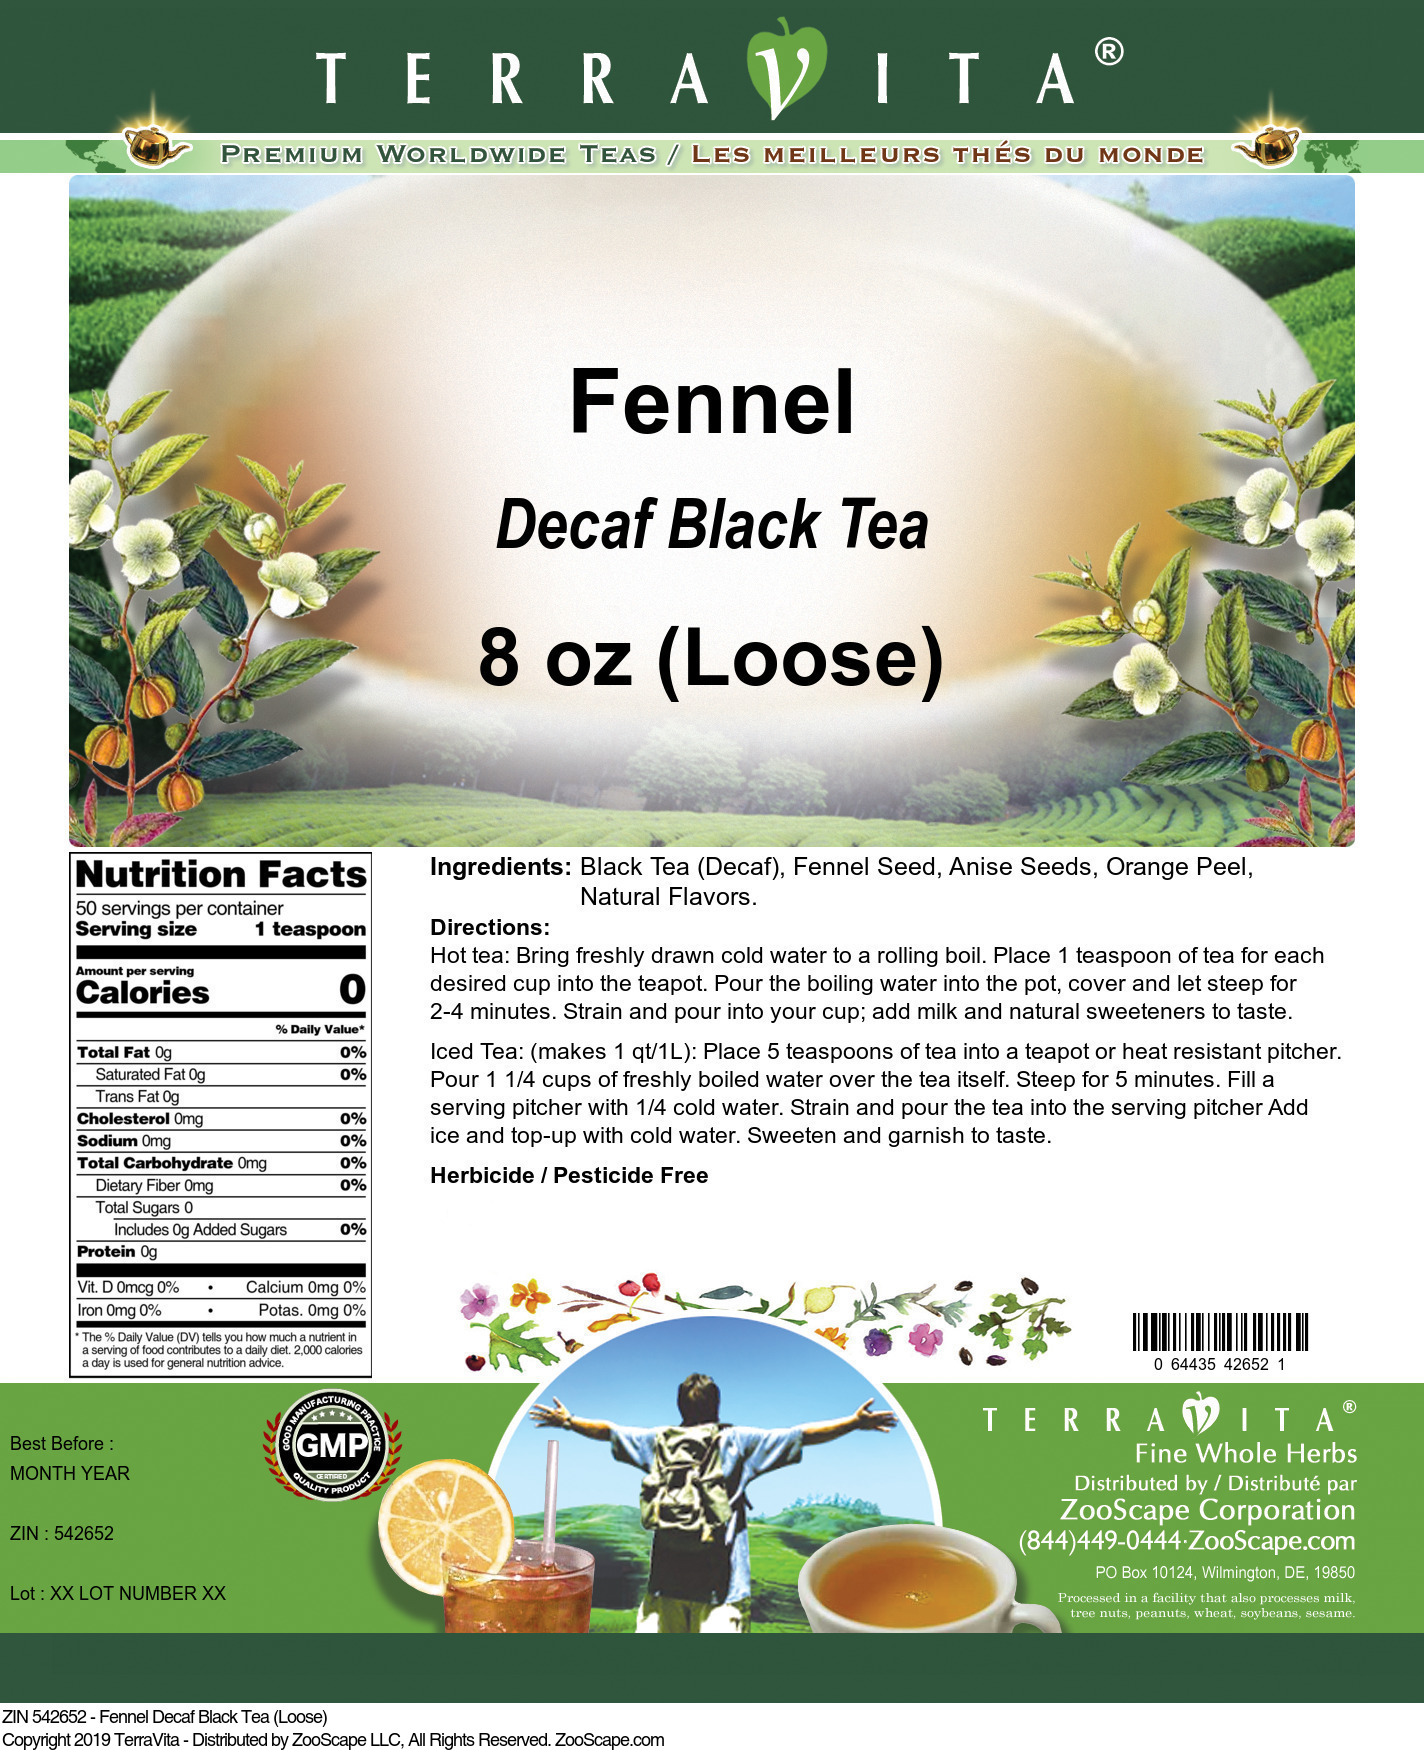 Fennel Decaf Black Tea (Loose) - Label